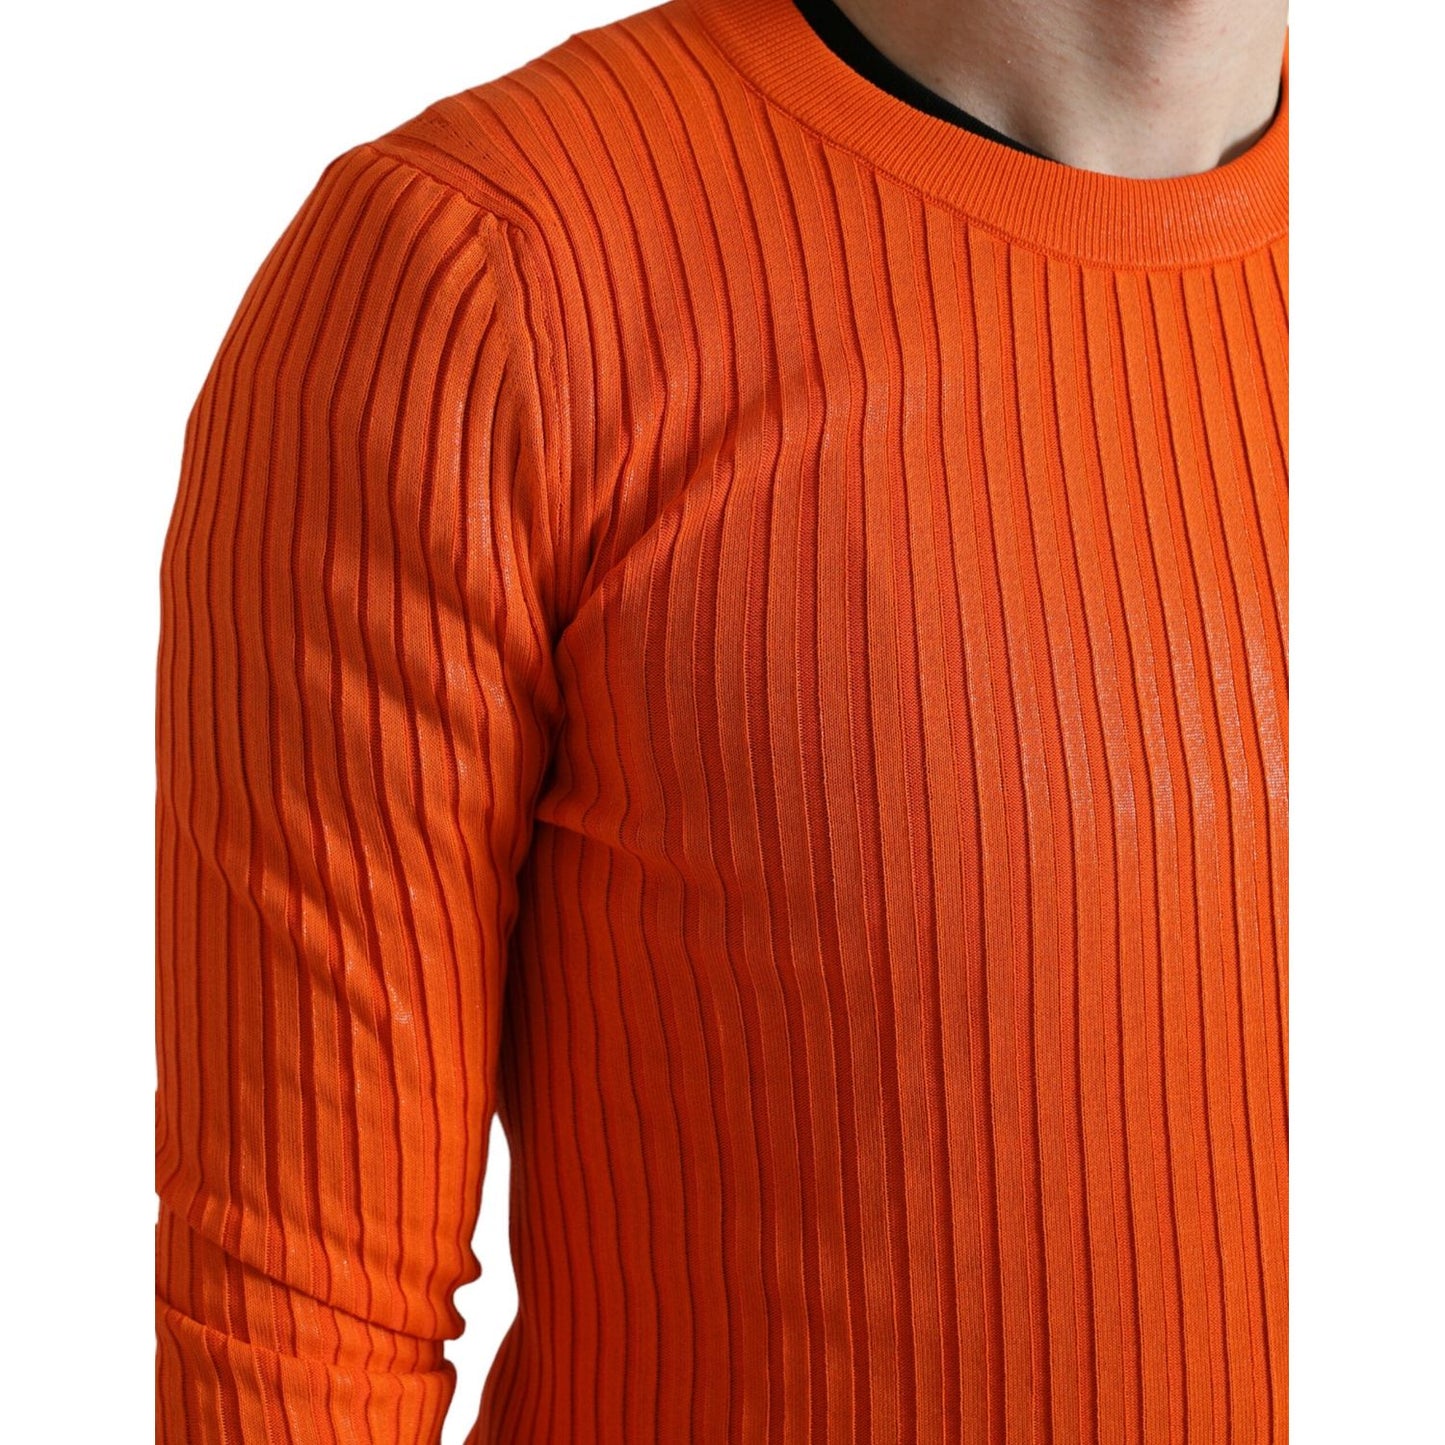 Dolce & Gabbana Sleek Sunset Orange Knitted Pullover Sweater orange-knitted-crewneck-men-pullover-sweater